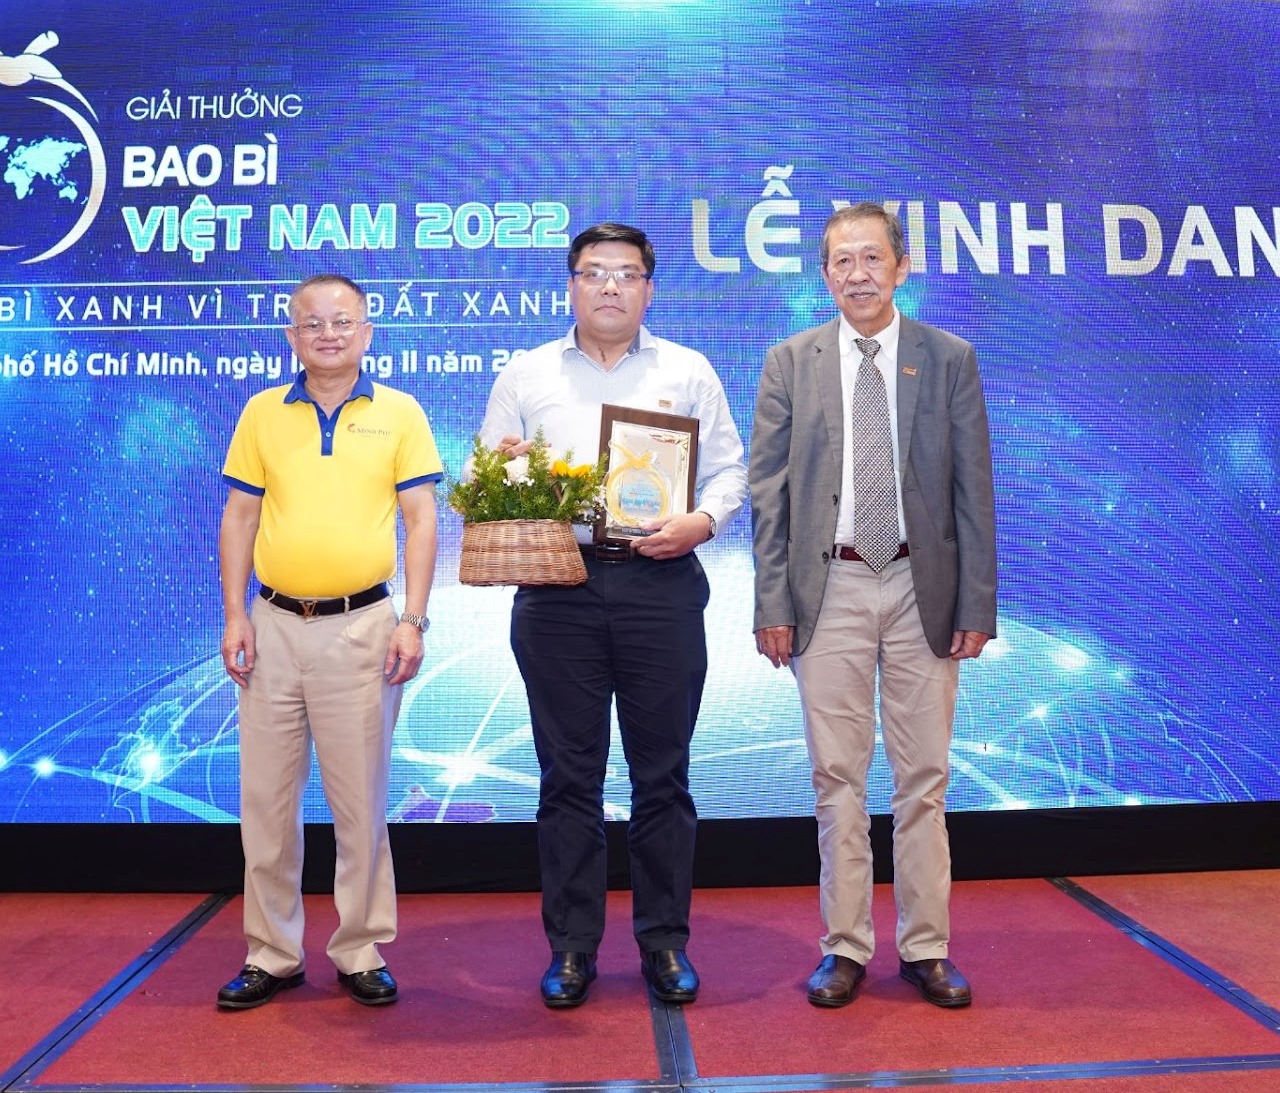 ông Nguyễn Ngọc Sang Chủ tịch Hiệp hội bao bì Việt Nam 1 13 doanh nghiệp được vinh danh tại Giải thưởng Bao bì Việt Nam 2022